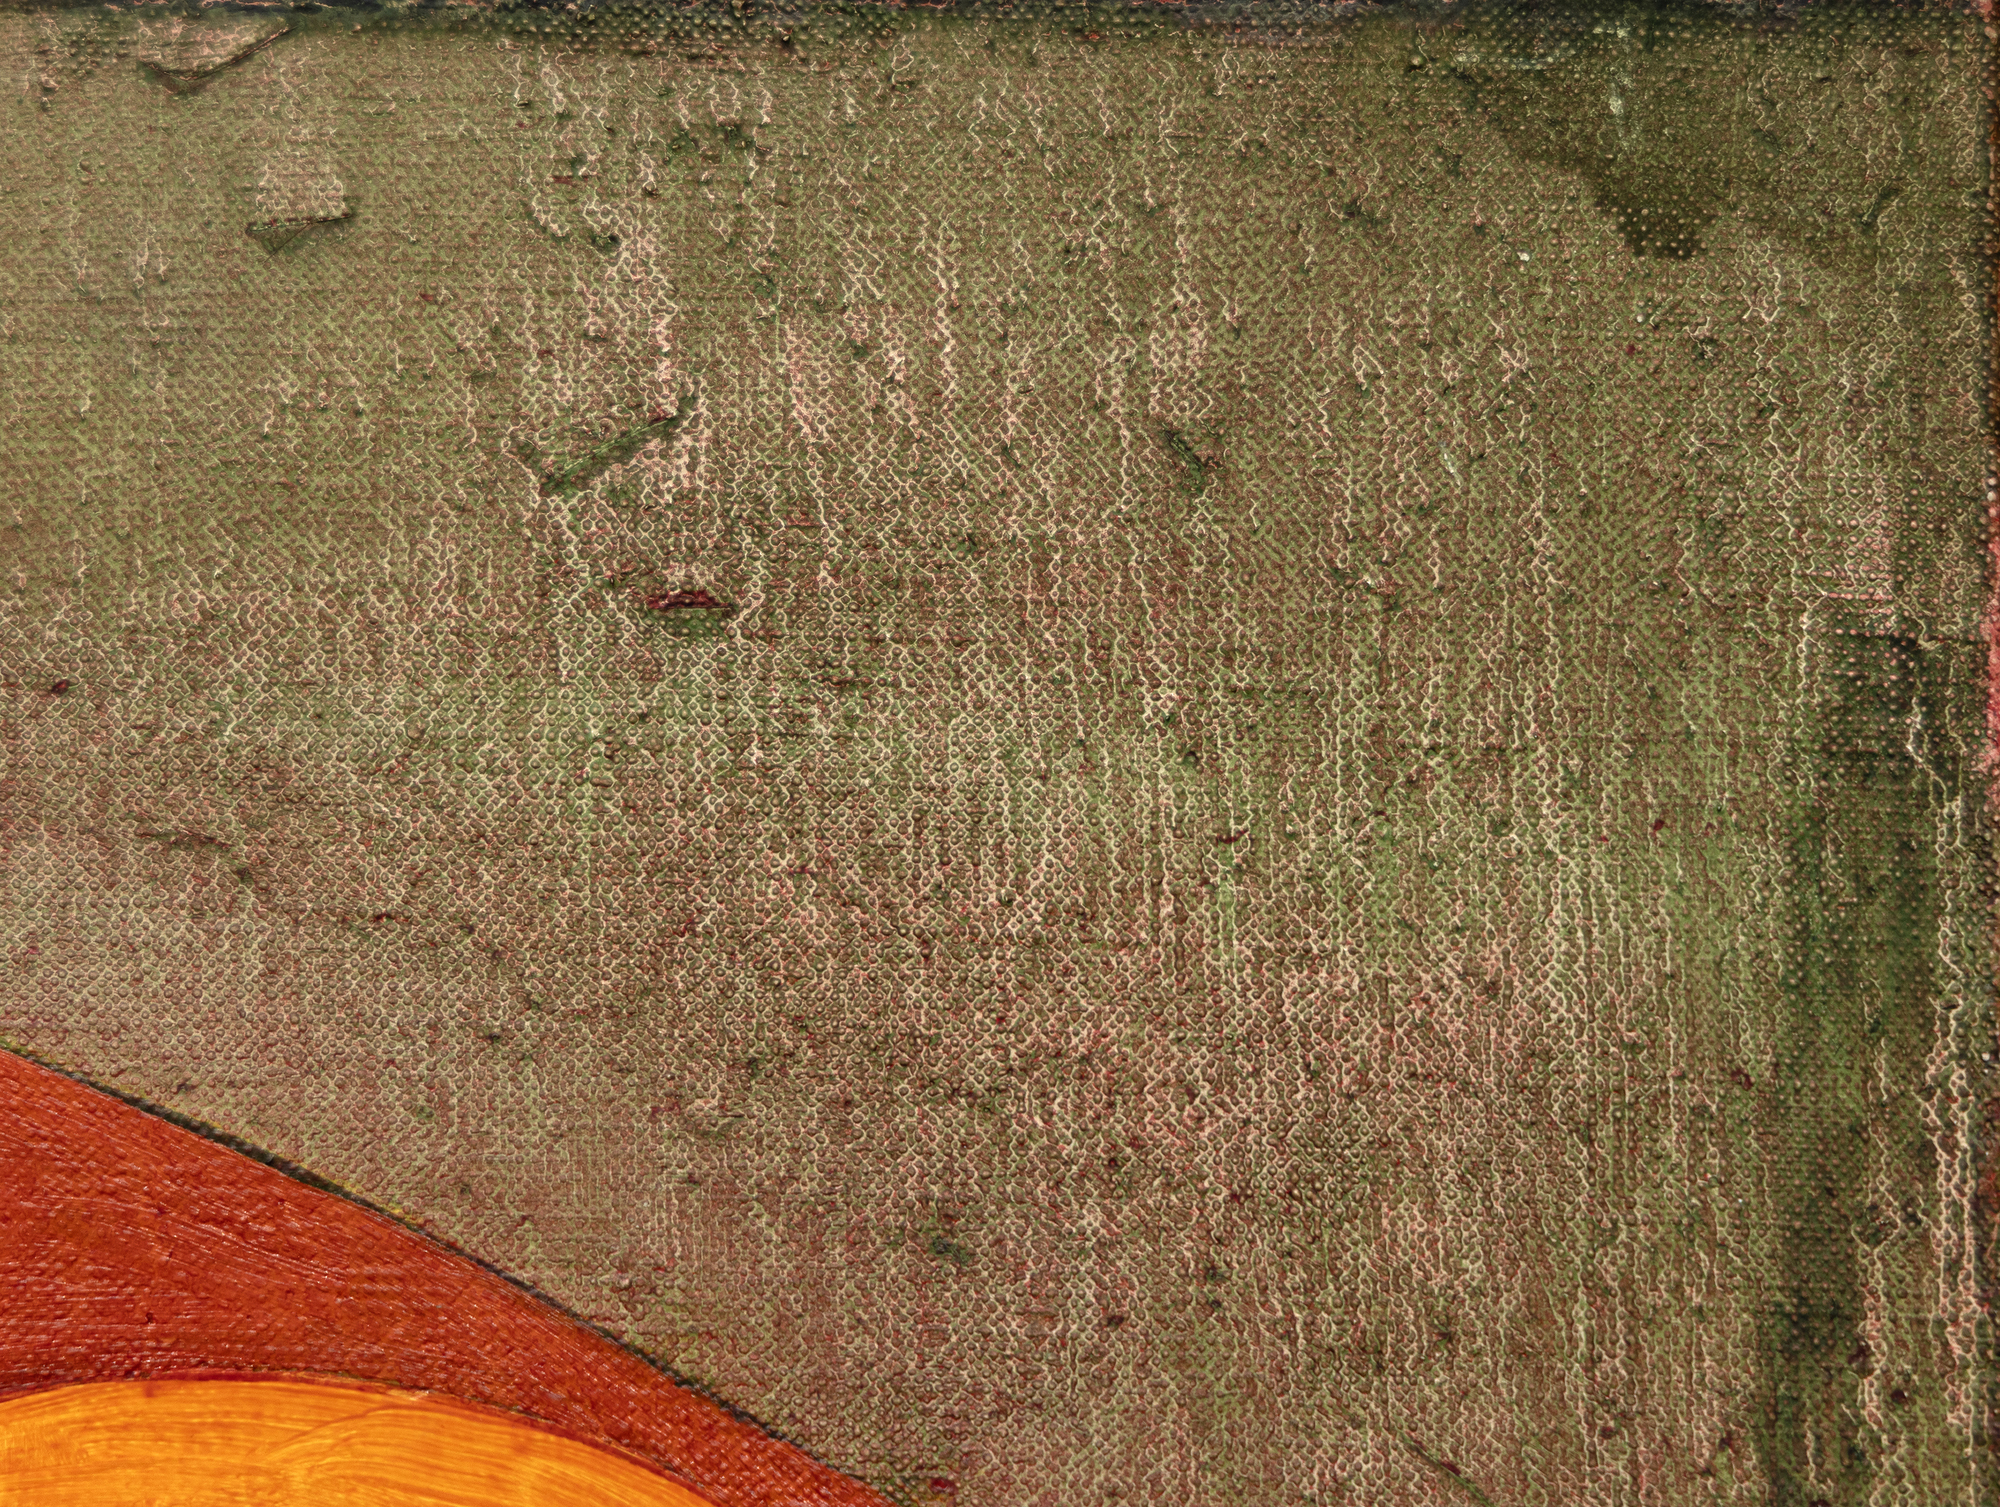 Né en 1944, Thomas Nozkowski crée de petites peintures richement colorées qui reflètent les influences dichotomiques des expressionnistes abstraits et des réfugiés du Bauhaus avec lesquels il a étudié à la Cooper Union. À l'aide d'un petit pinceau, il gratte et frotte la peinture d'une manière qui s'inscrit dans l'œuvre finale. Il a développé un vocabulaire distinctif et étendu, déployant des formes géométriques de type biomorphique dans des combinaisons de couleurs variées et un large éventail d'associations : carrelage, grappes de cellules, architecture et espace. Souvent, elles sont distillées à partir de ses propres souvenirs et expériences. Nozkowski a commenté cette peinture spécifique (Sans titre, 1994) en disant qu'elle reflétait sa fascination pour les scènes mythologiques peintes sur les panneaux de commodes en cassone de la Renaissance. Il a déclaré qu'il s'agissait du meilleur des trois ou quatre panneaux de 15" x 30" de cette série. Nozkowski a été manipulé pendant de nombreuses années par la galerie Pace. Il est décédé en 2019.